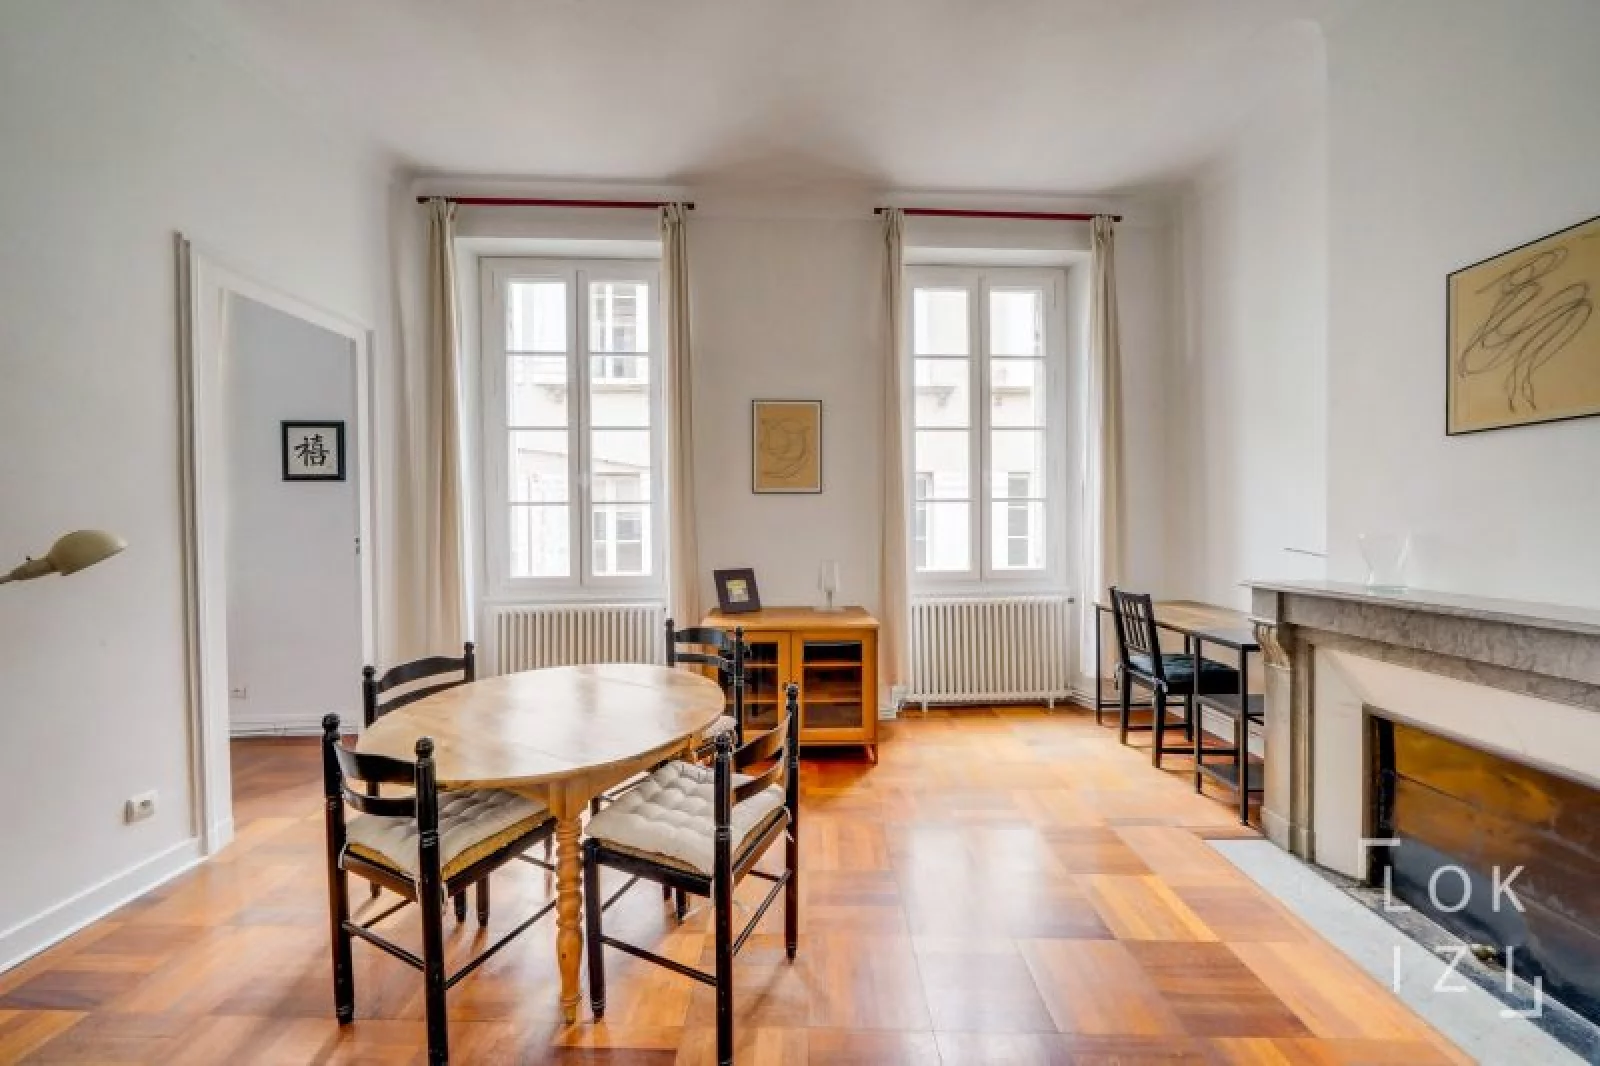 Location appartement meublé duplex 3 pièces 67m² (Bordeaux - Chartrons)